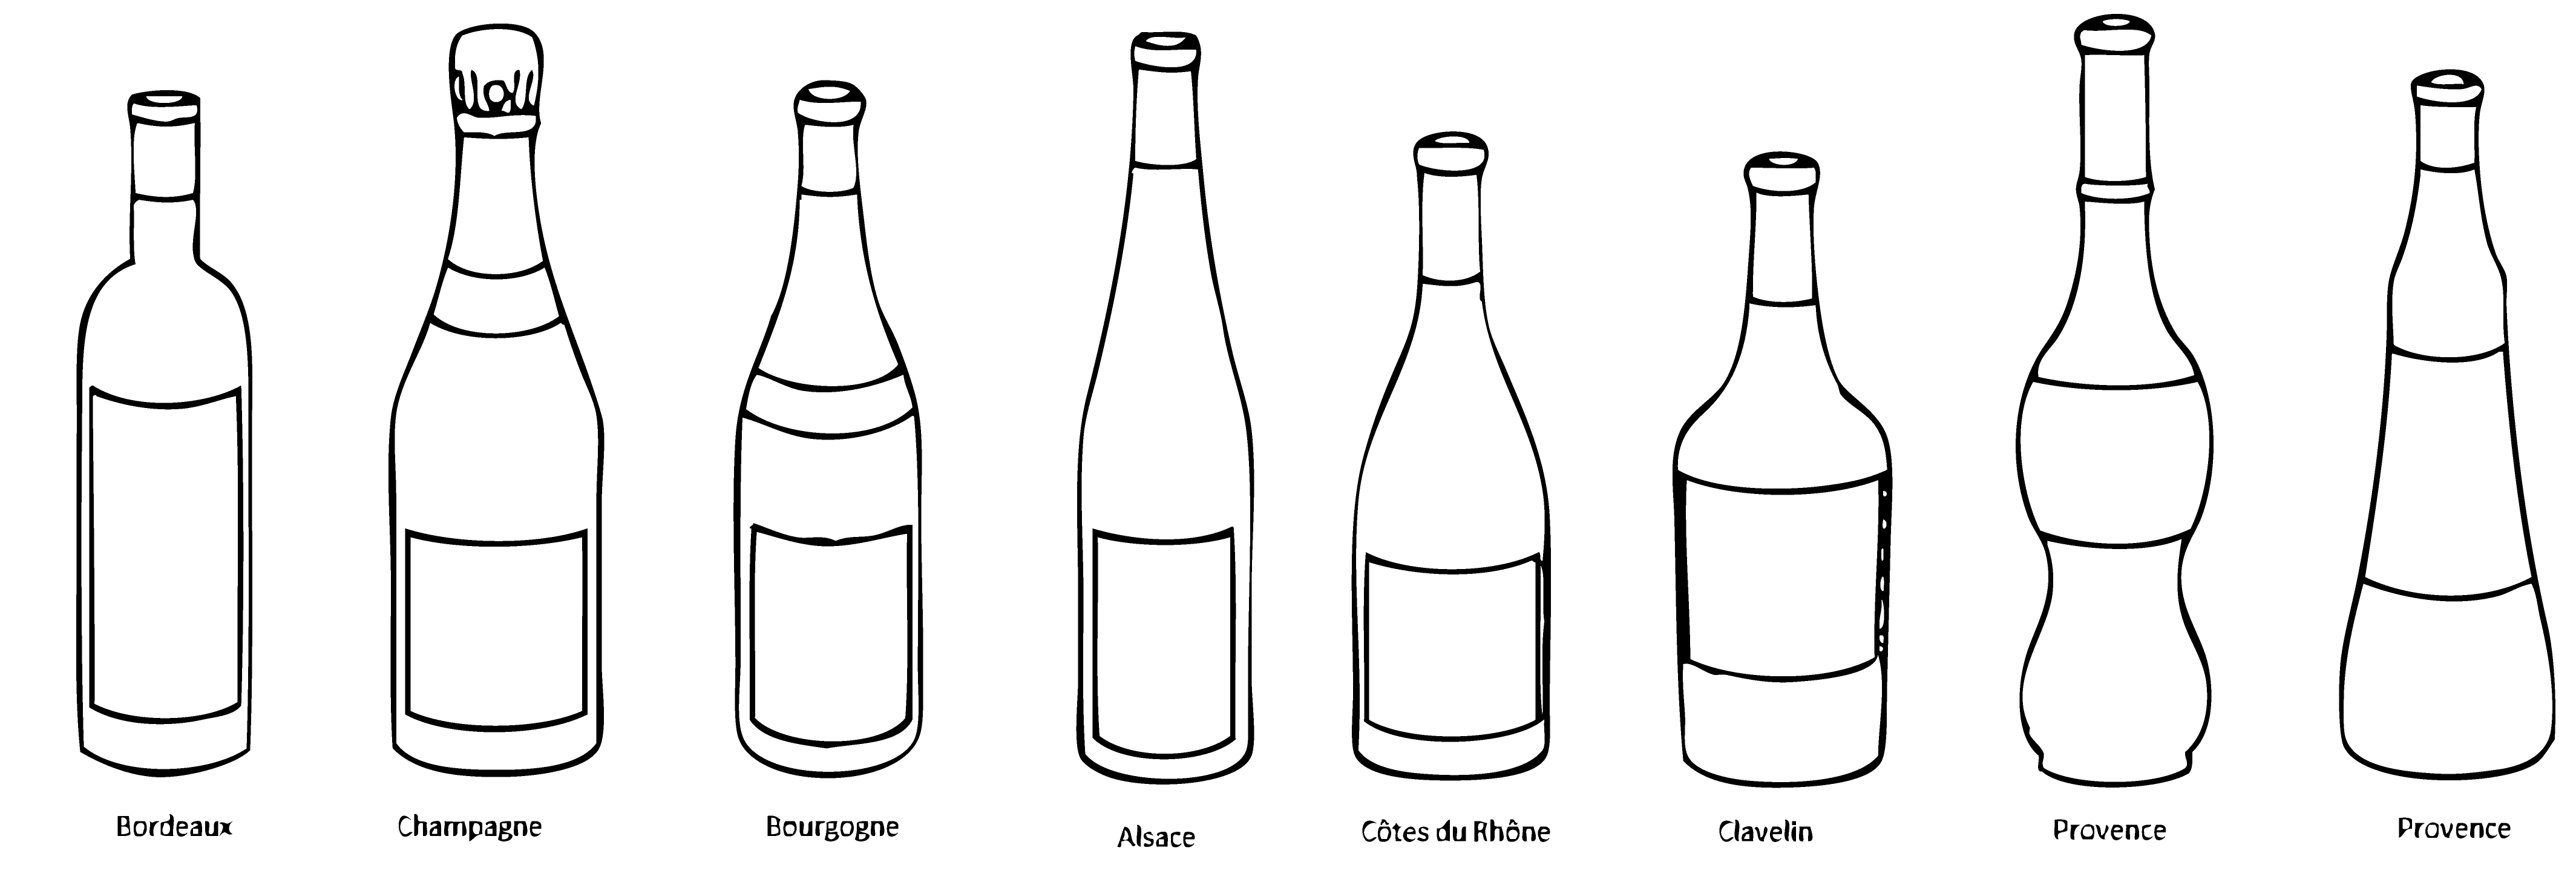 Bouteilles de vin bourgogne de différentes teintes et tailles